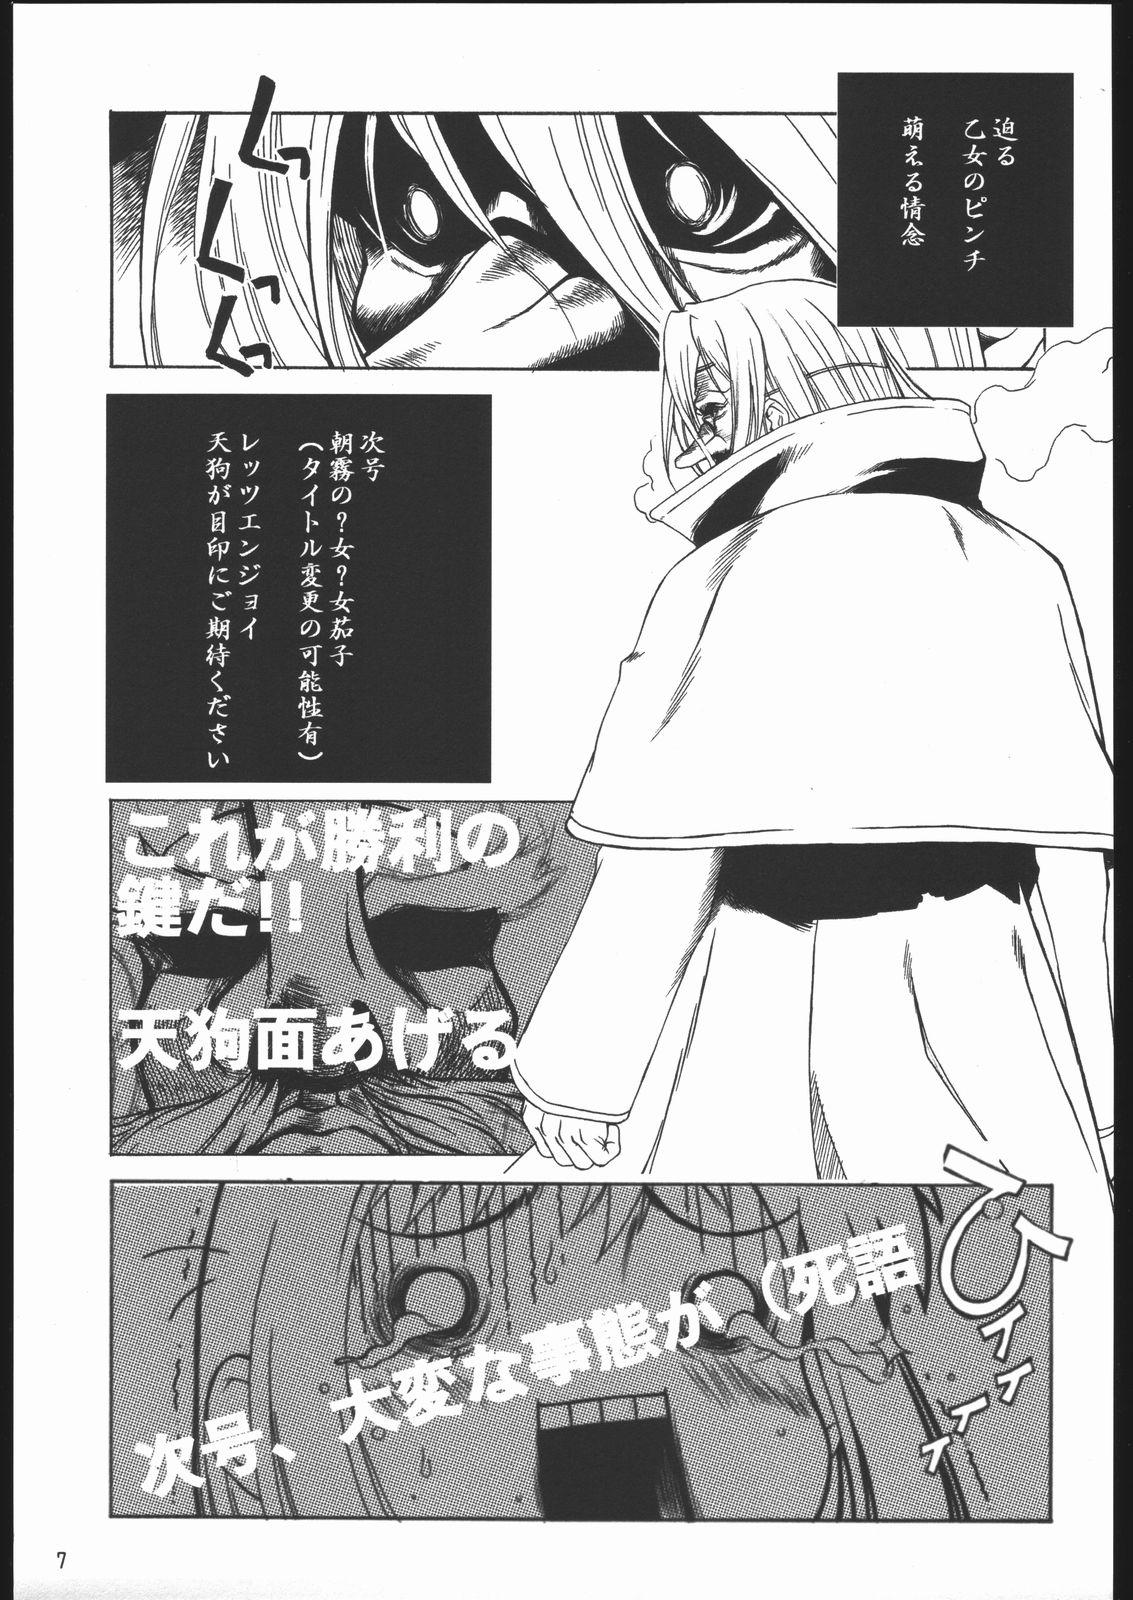 Women Yappari Dame Ningen no Shoumei - To heart Tsukihime Uchuu no stellvia Read or die Vip - Page 7